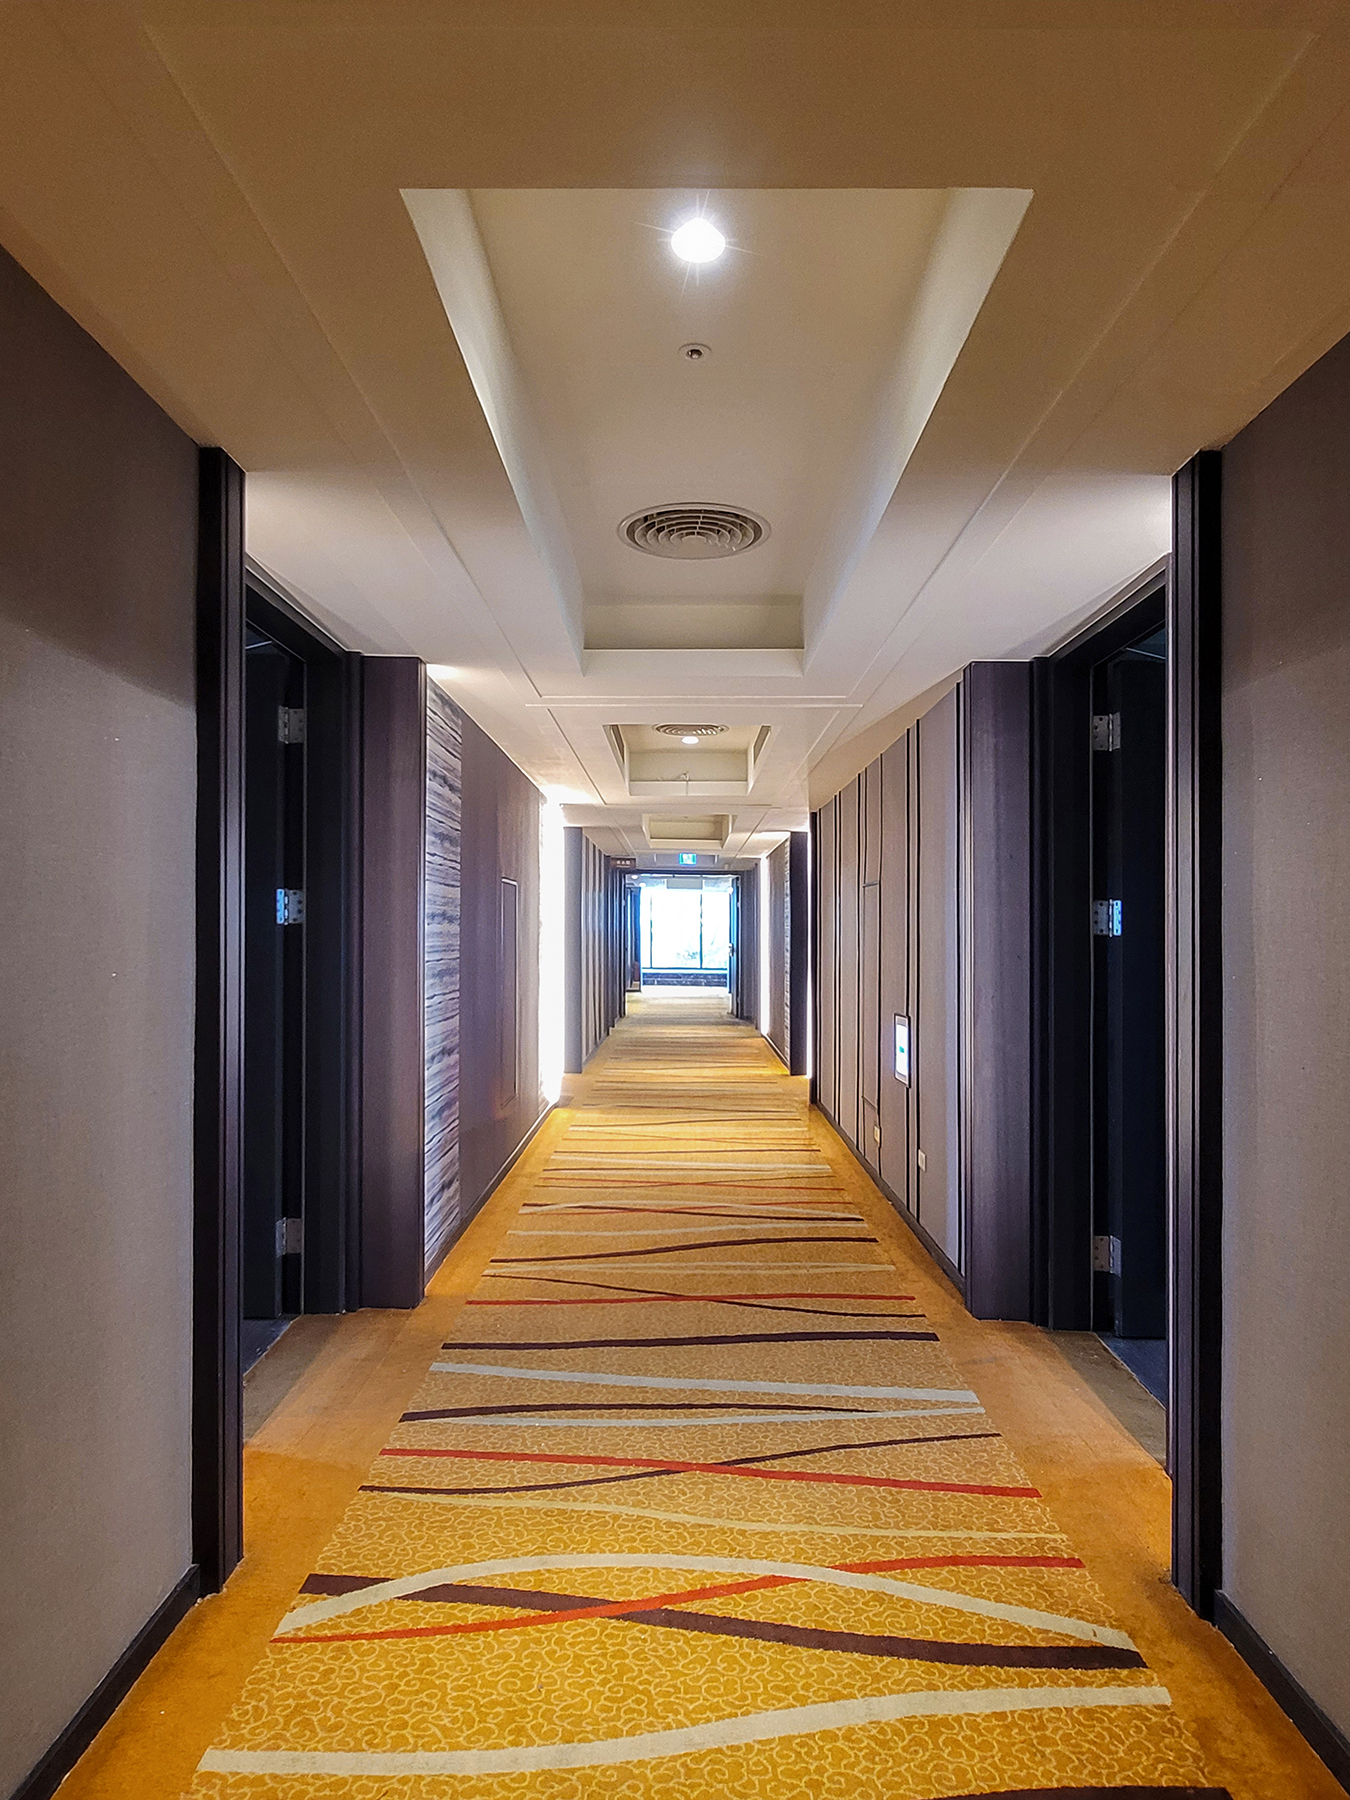 義大天悅飯店改裝設計 星悅尊榮 樓層廊道